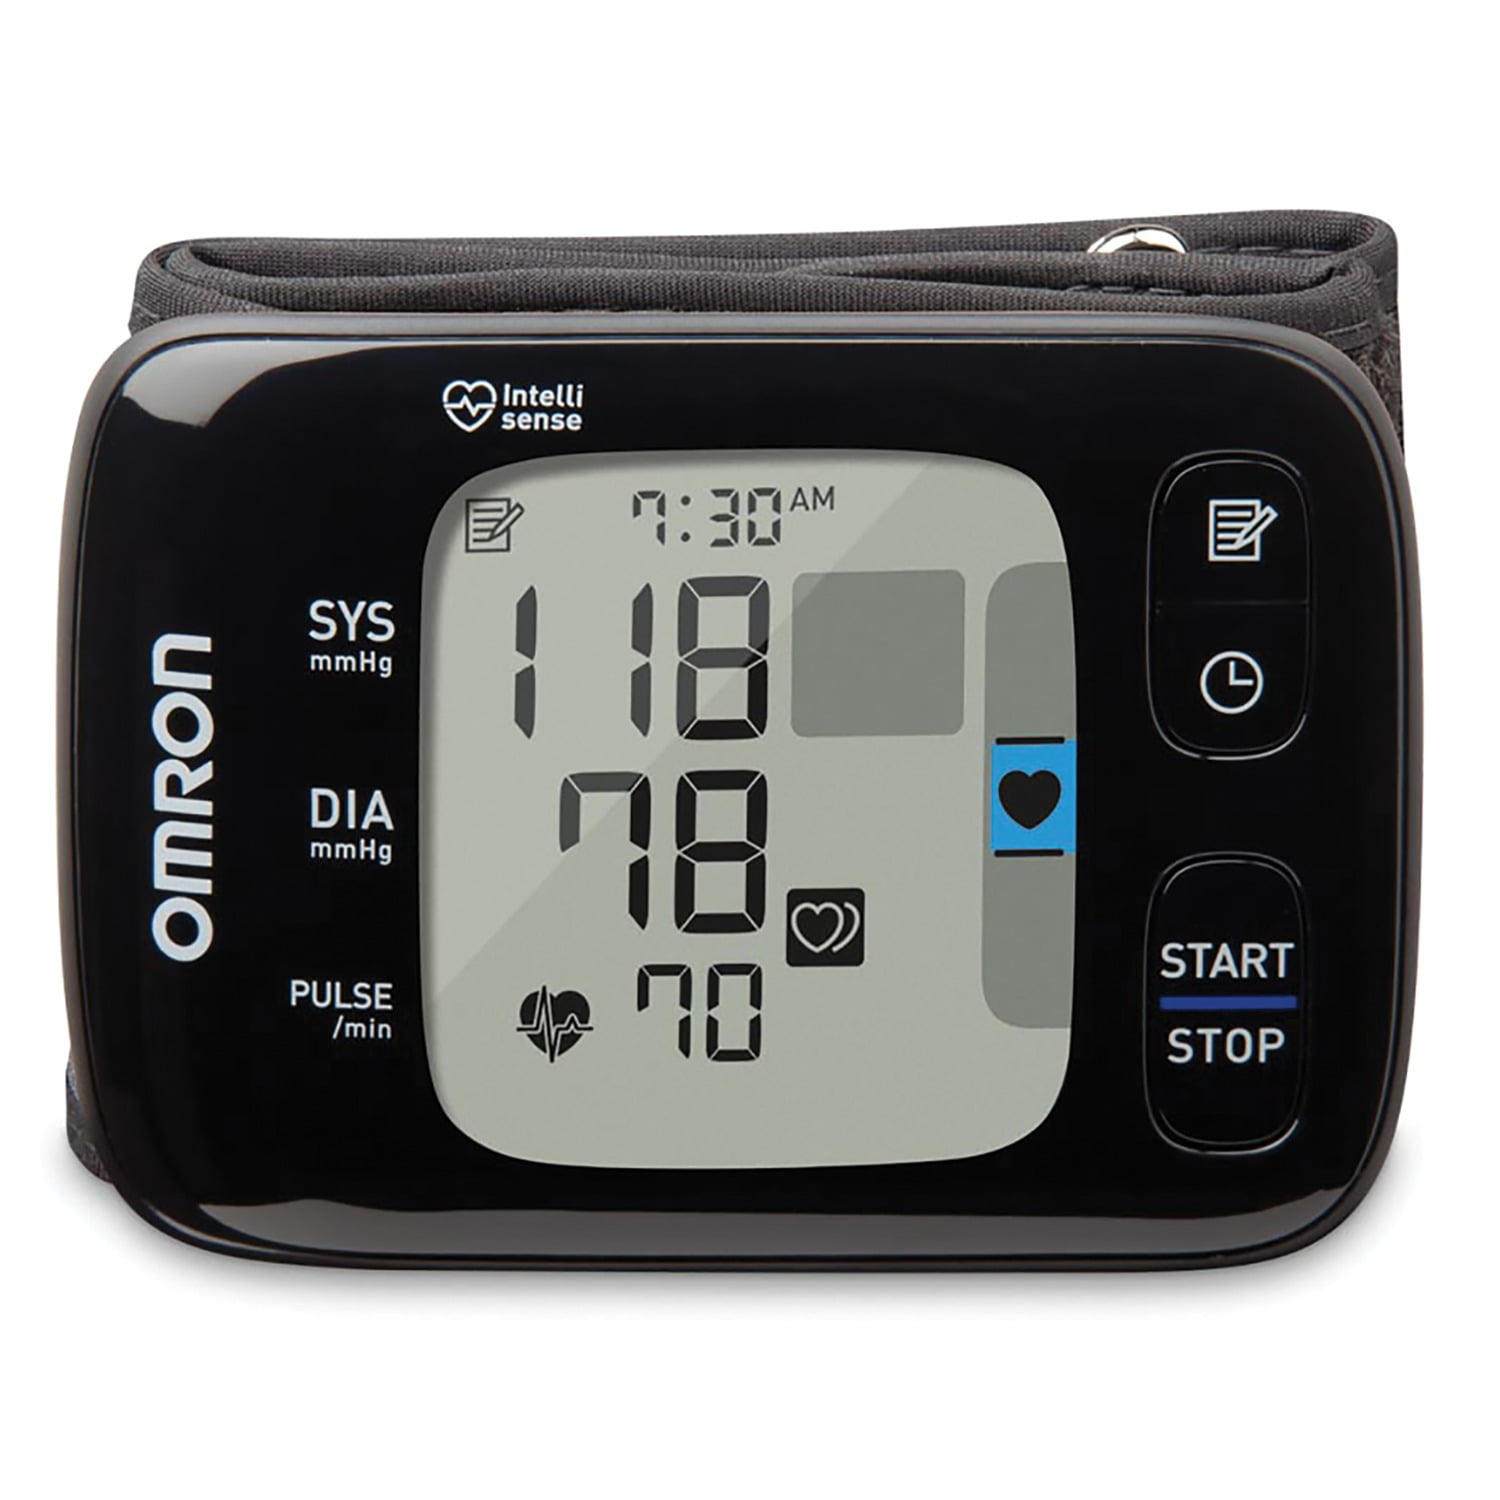 de wind is sterk het spoor Oprechtheid OMRON 7 Series Wireless Wrist Blood Pressure Monitor (Model BP6350) -  Walmart.com